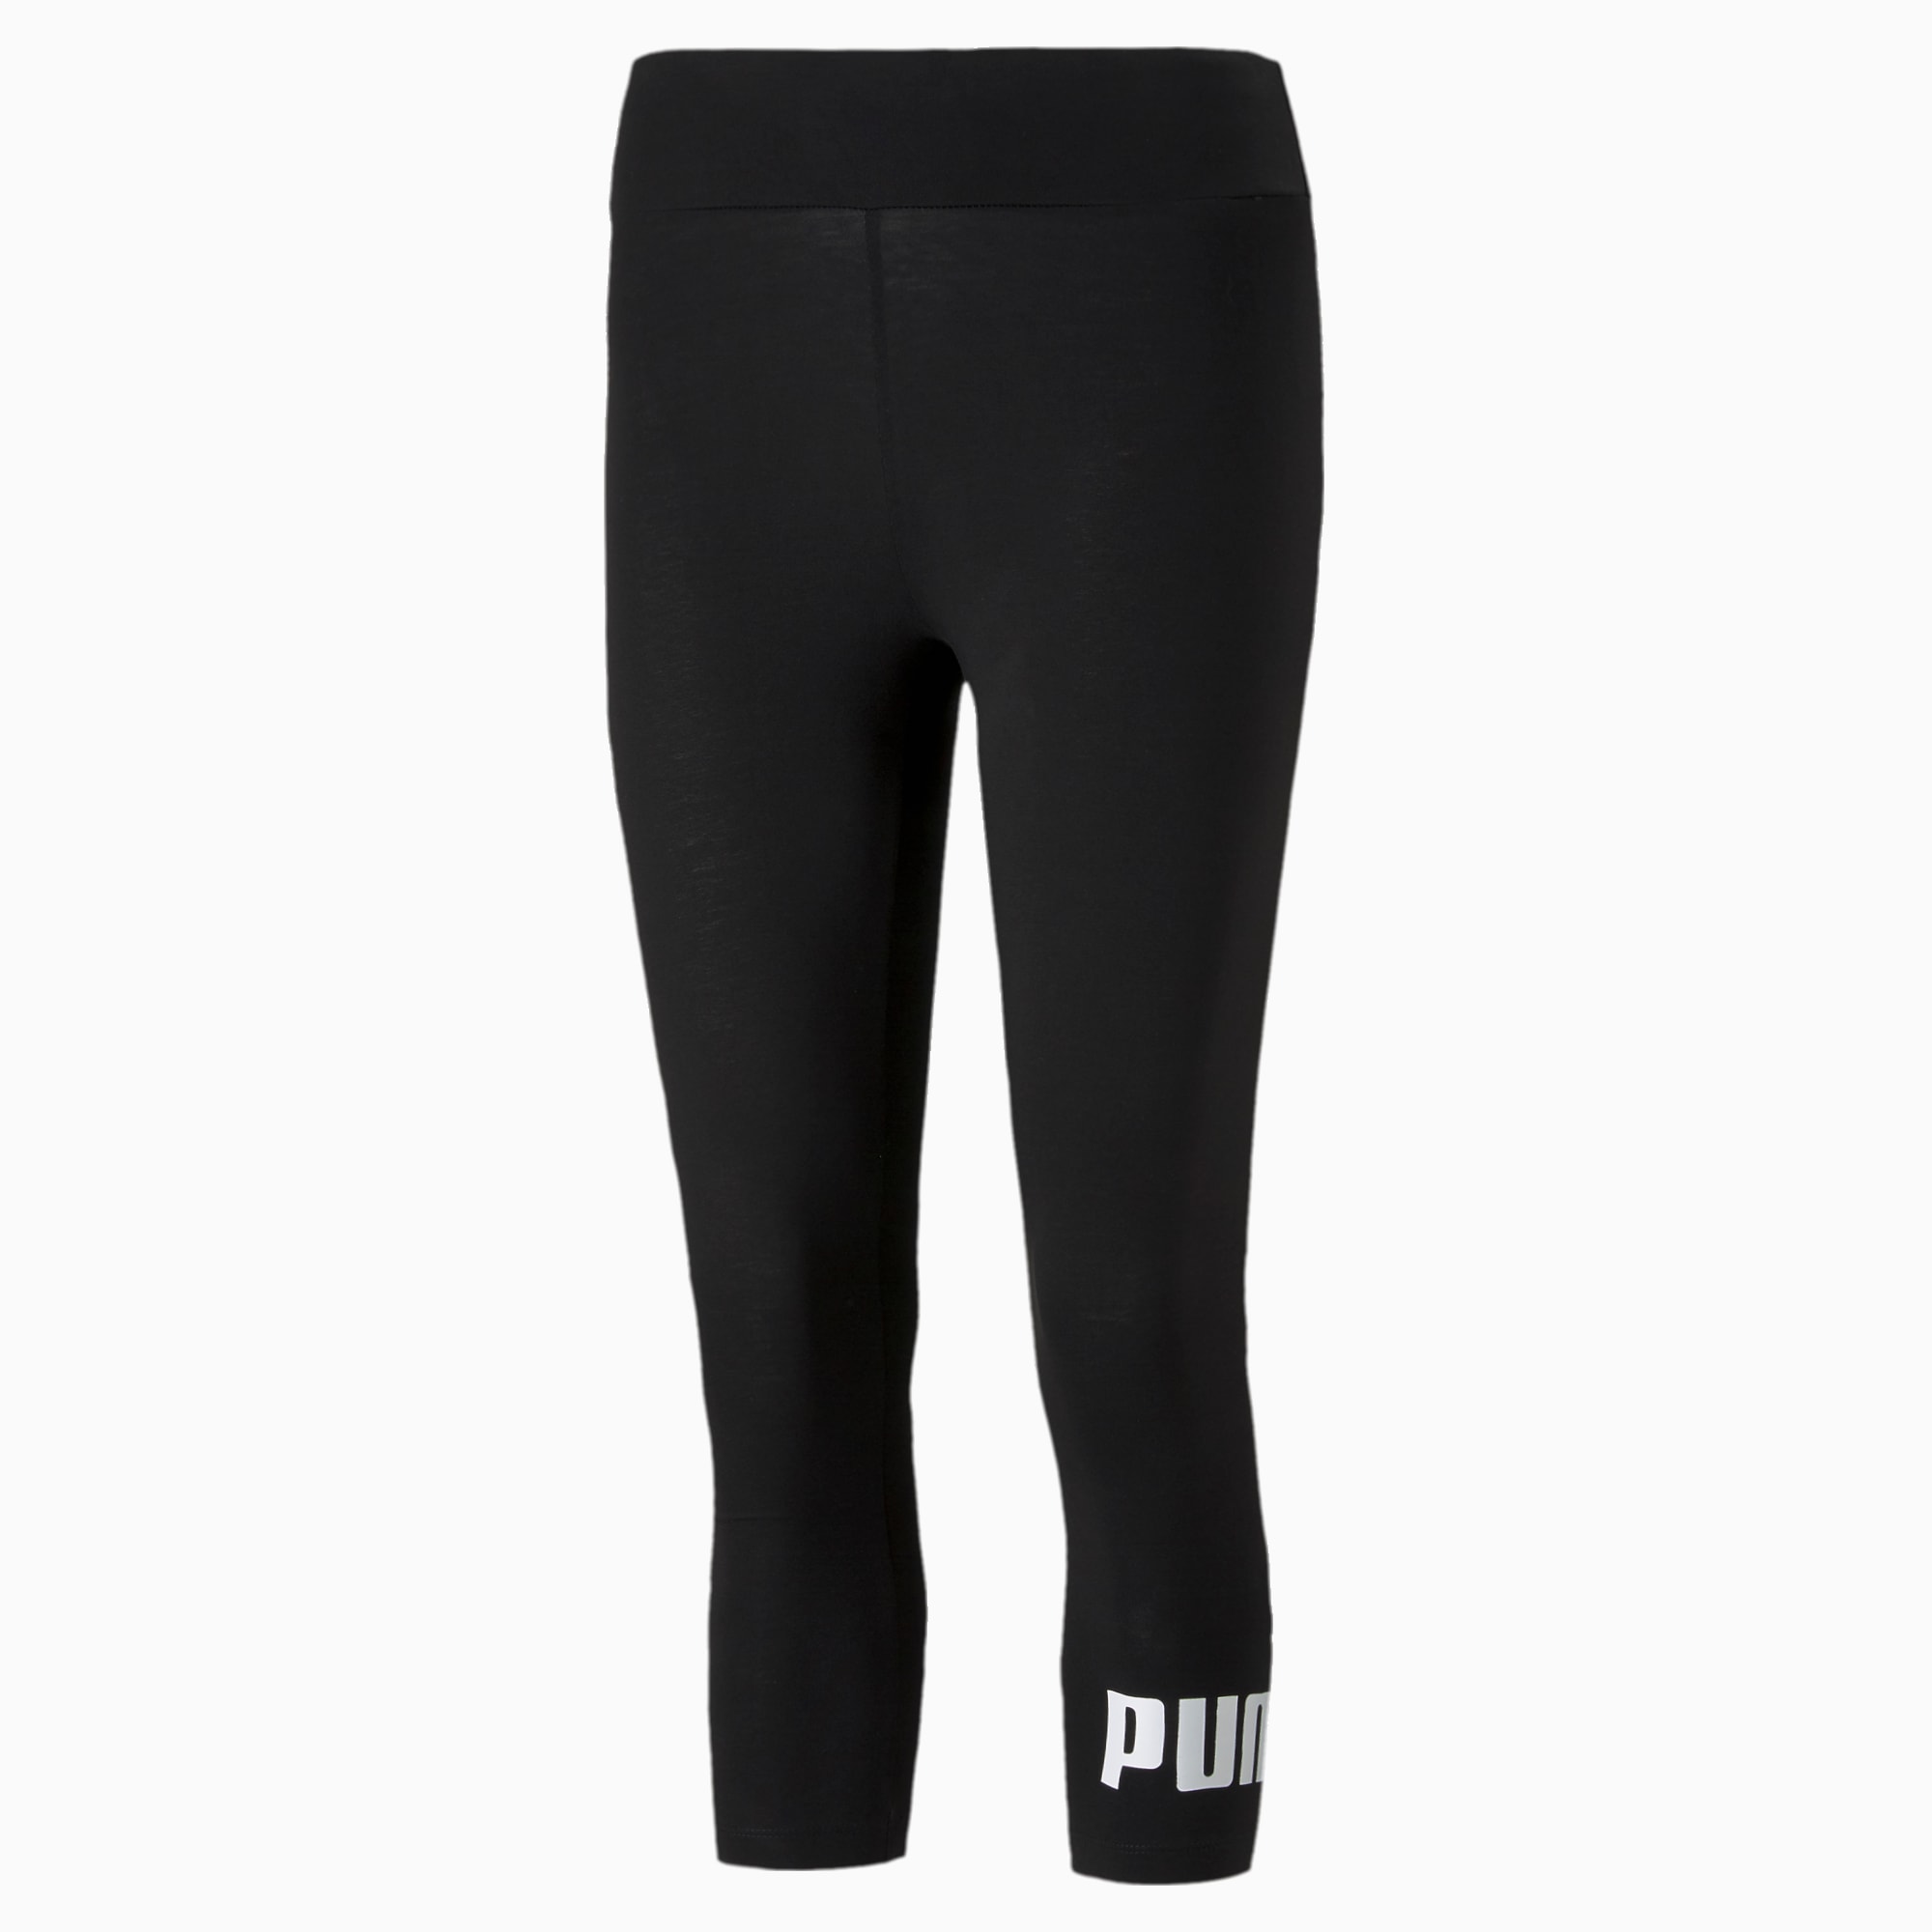 Buy Puma women sportswear fit 3 4 lenght brand logo training